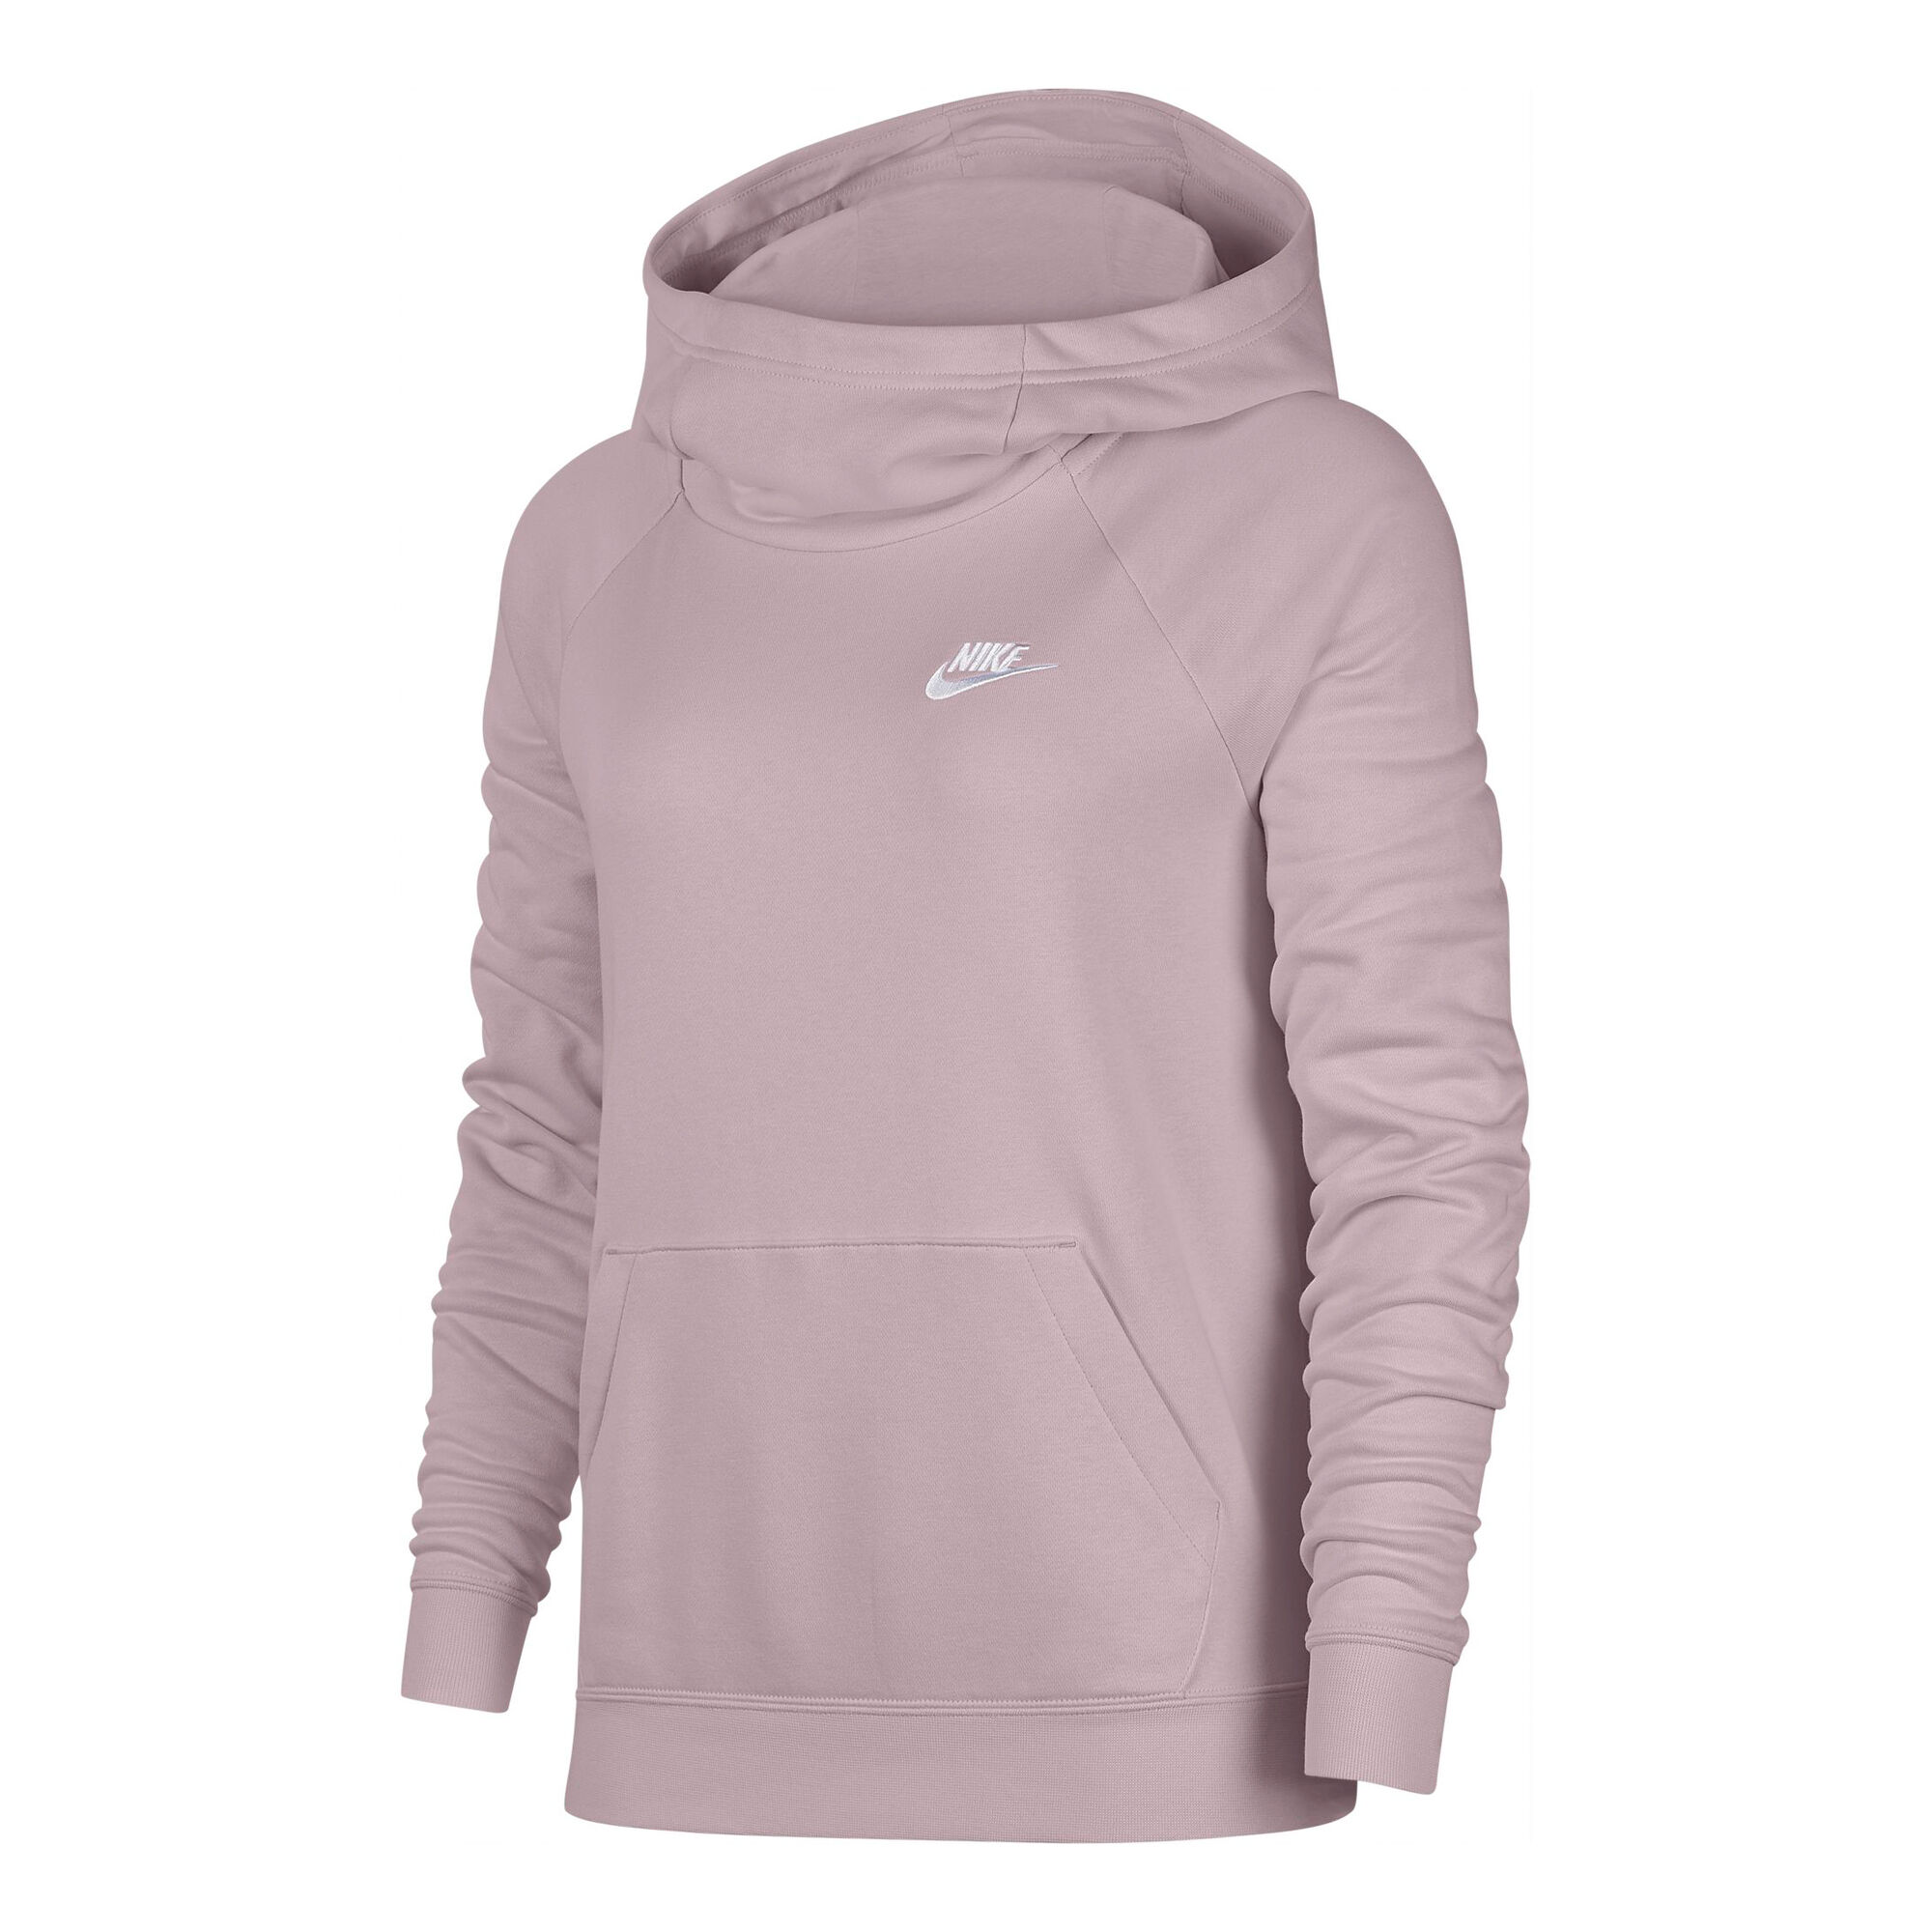 buy Nike Sportswear Essential Hoody Women - Lilac, White online ...